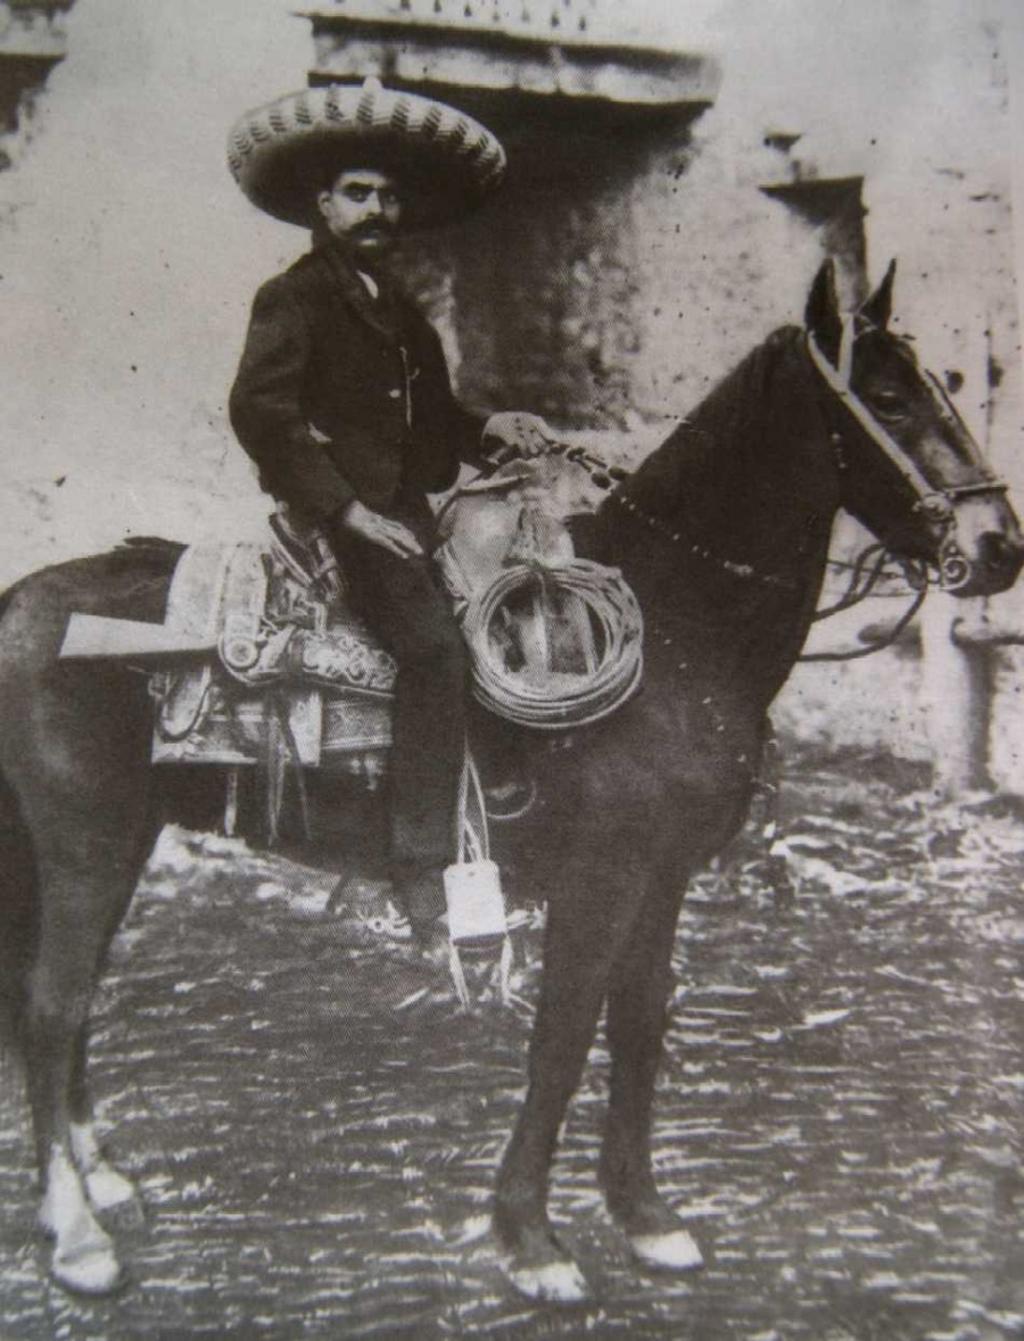 El líder militar y campesino Emiliano Zapata es recordado hoy que se cumplen 96 años de su muerte, con un homenaje en el monumento ecuestre erigido en su memoria en la Alameda del Sur, en la capital. (ARCHIVO)